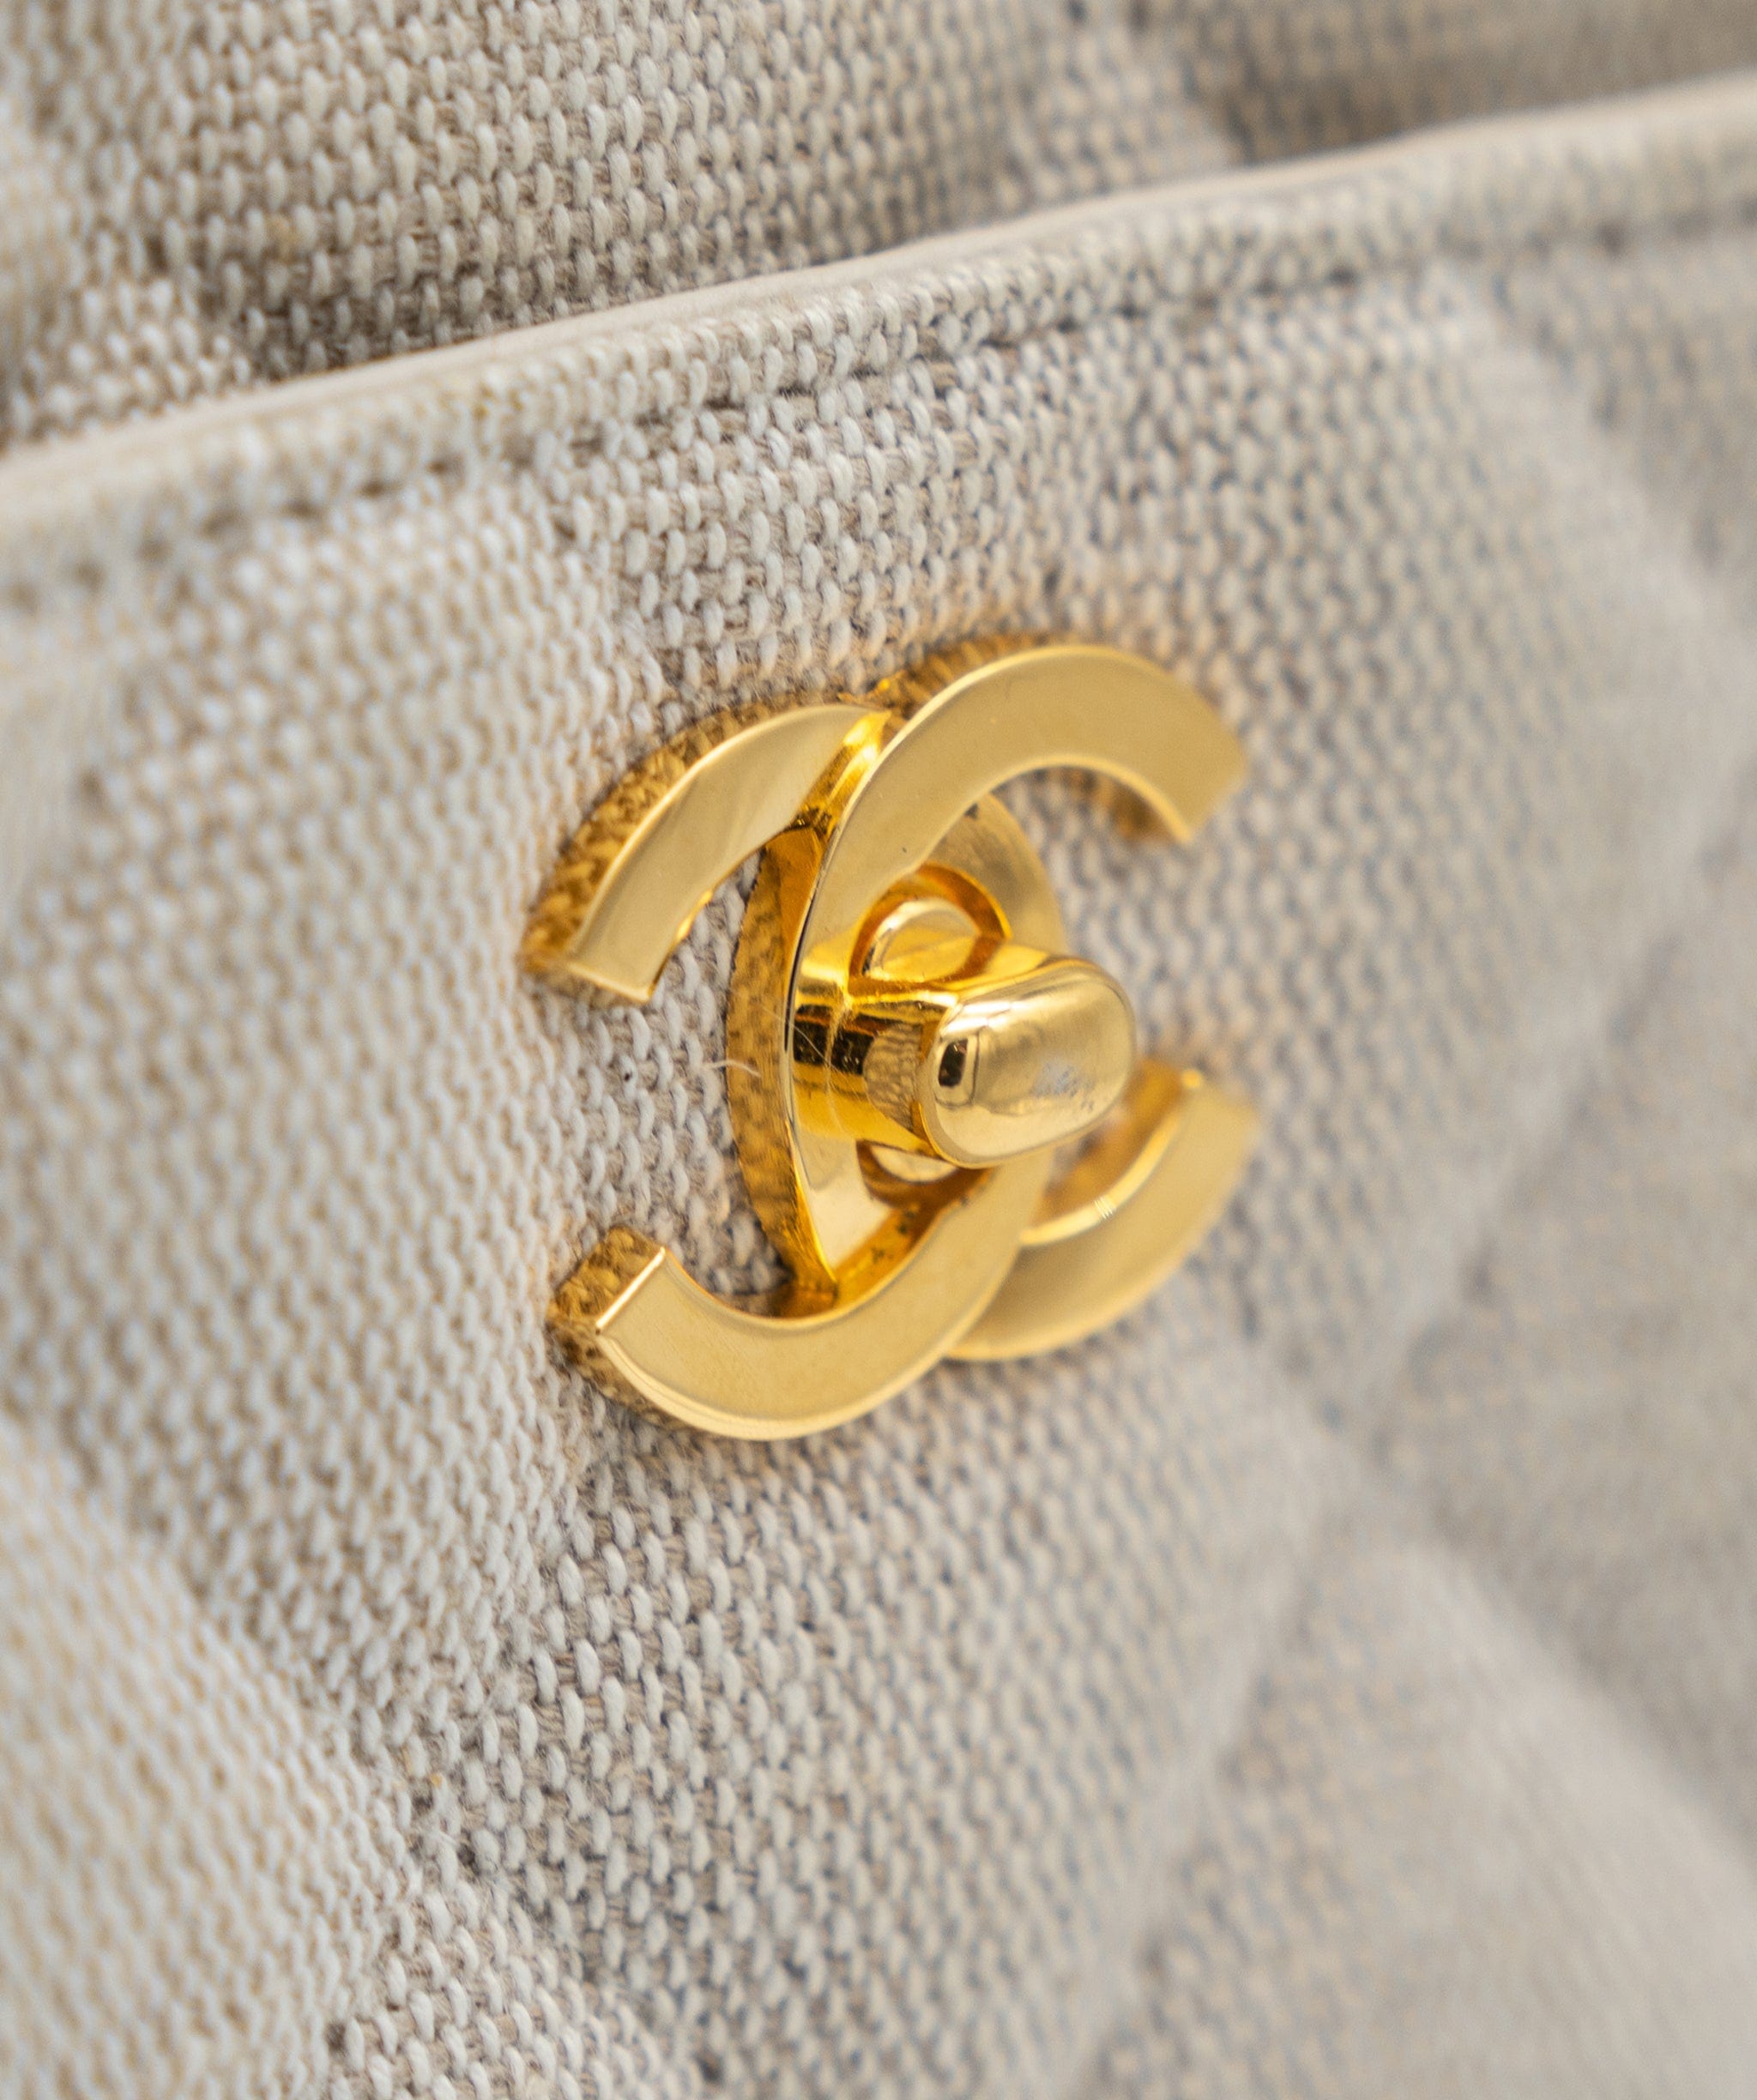 Chanel Chanel Quilted Raffia Handbag 5th PXL1761